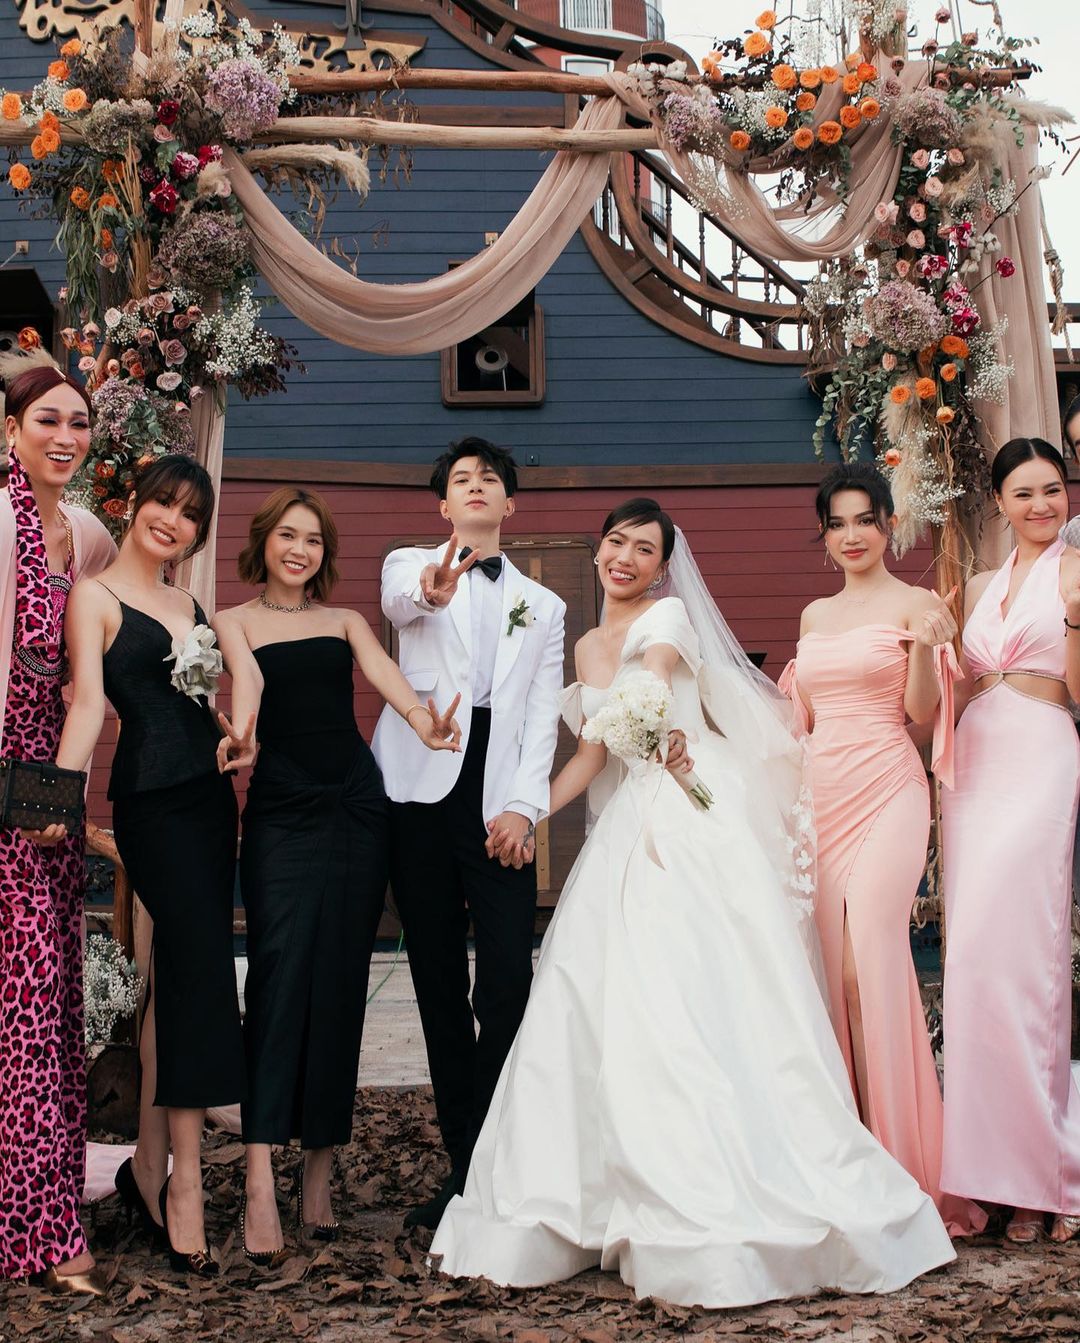 Váy cưới đẹp như cổ tích của 5 cô dâu đình đám Vbiz năm 2018  2sao